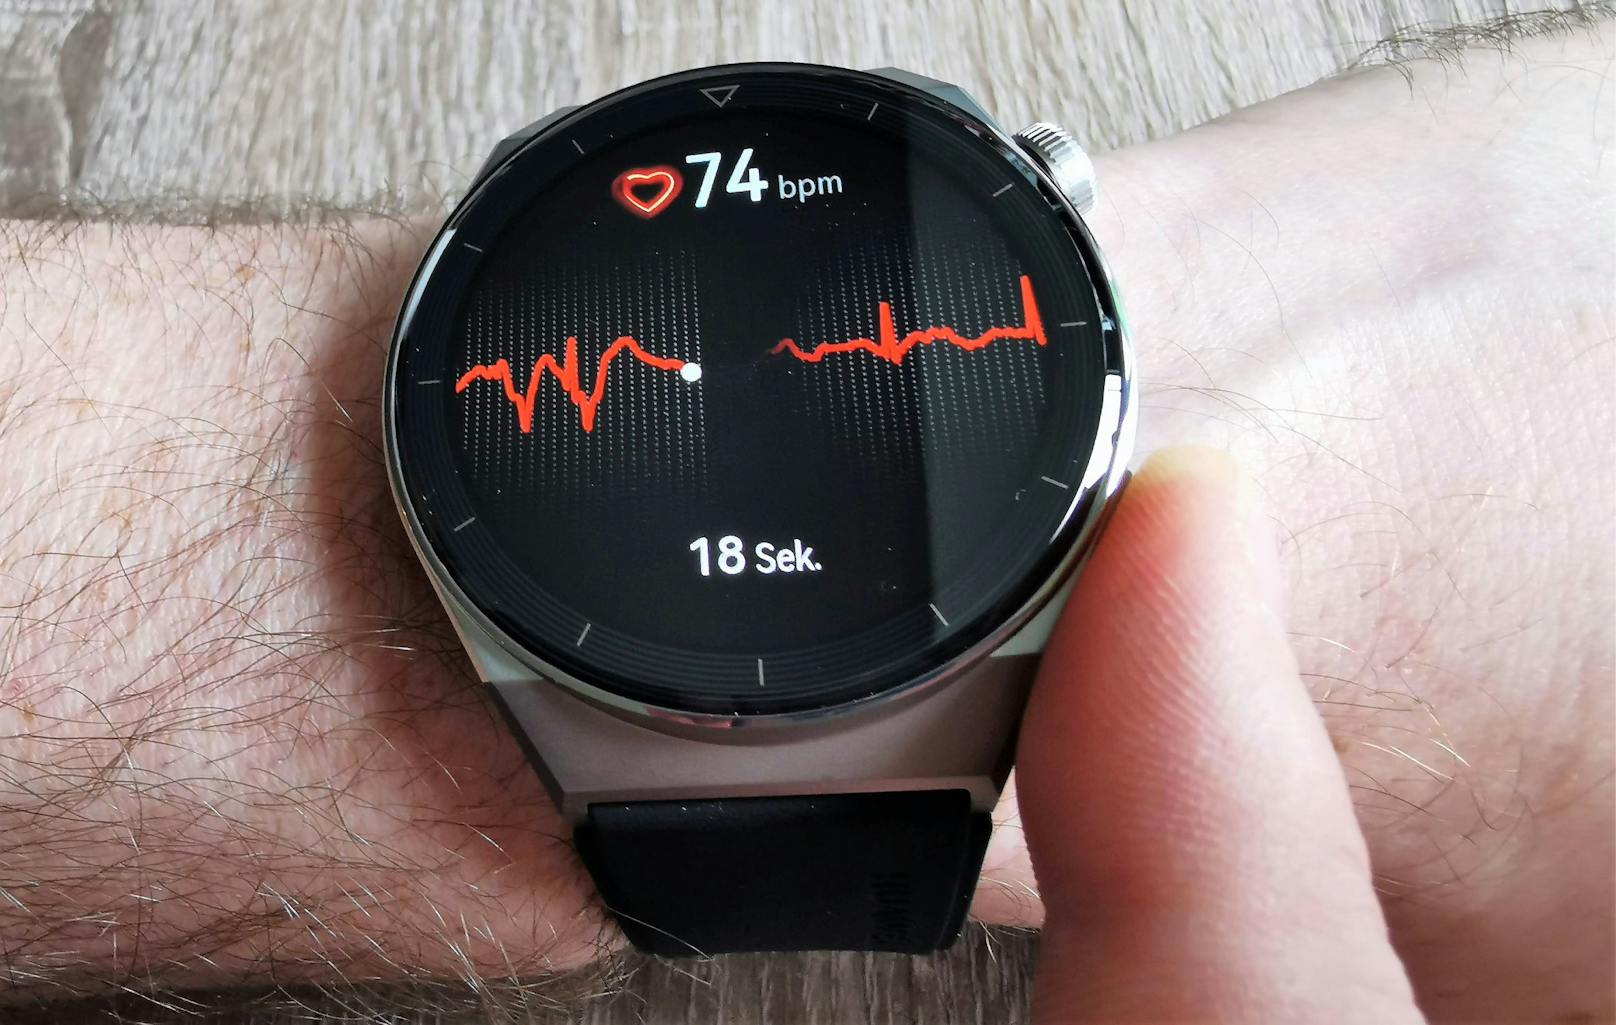 Die neuesten Huawei Smartwatches tracken Workouts jetzt auch mit der Strava-App und überwachen die Herzgesundheit der Nutzer:innen dank EKG-Funktion